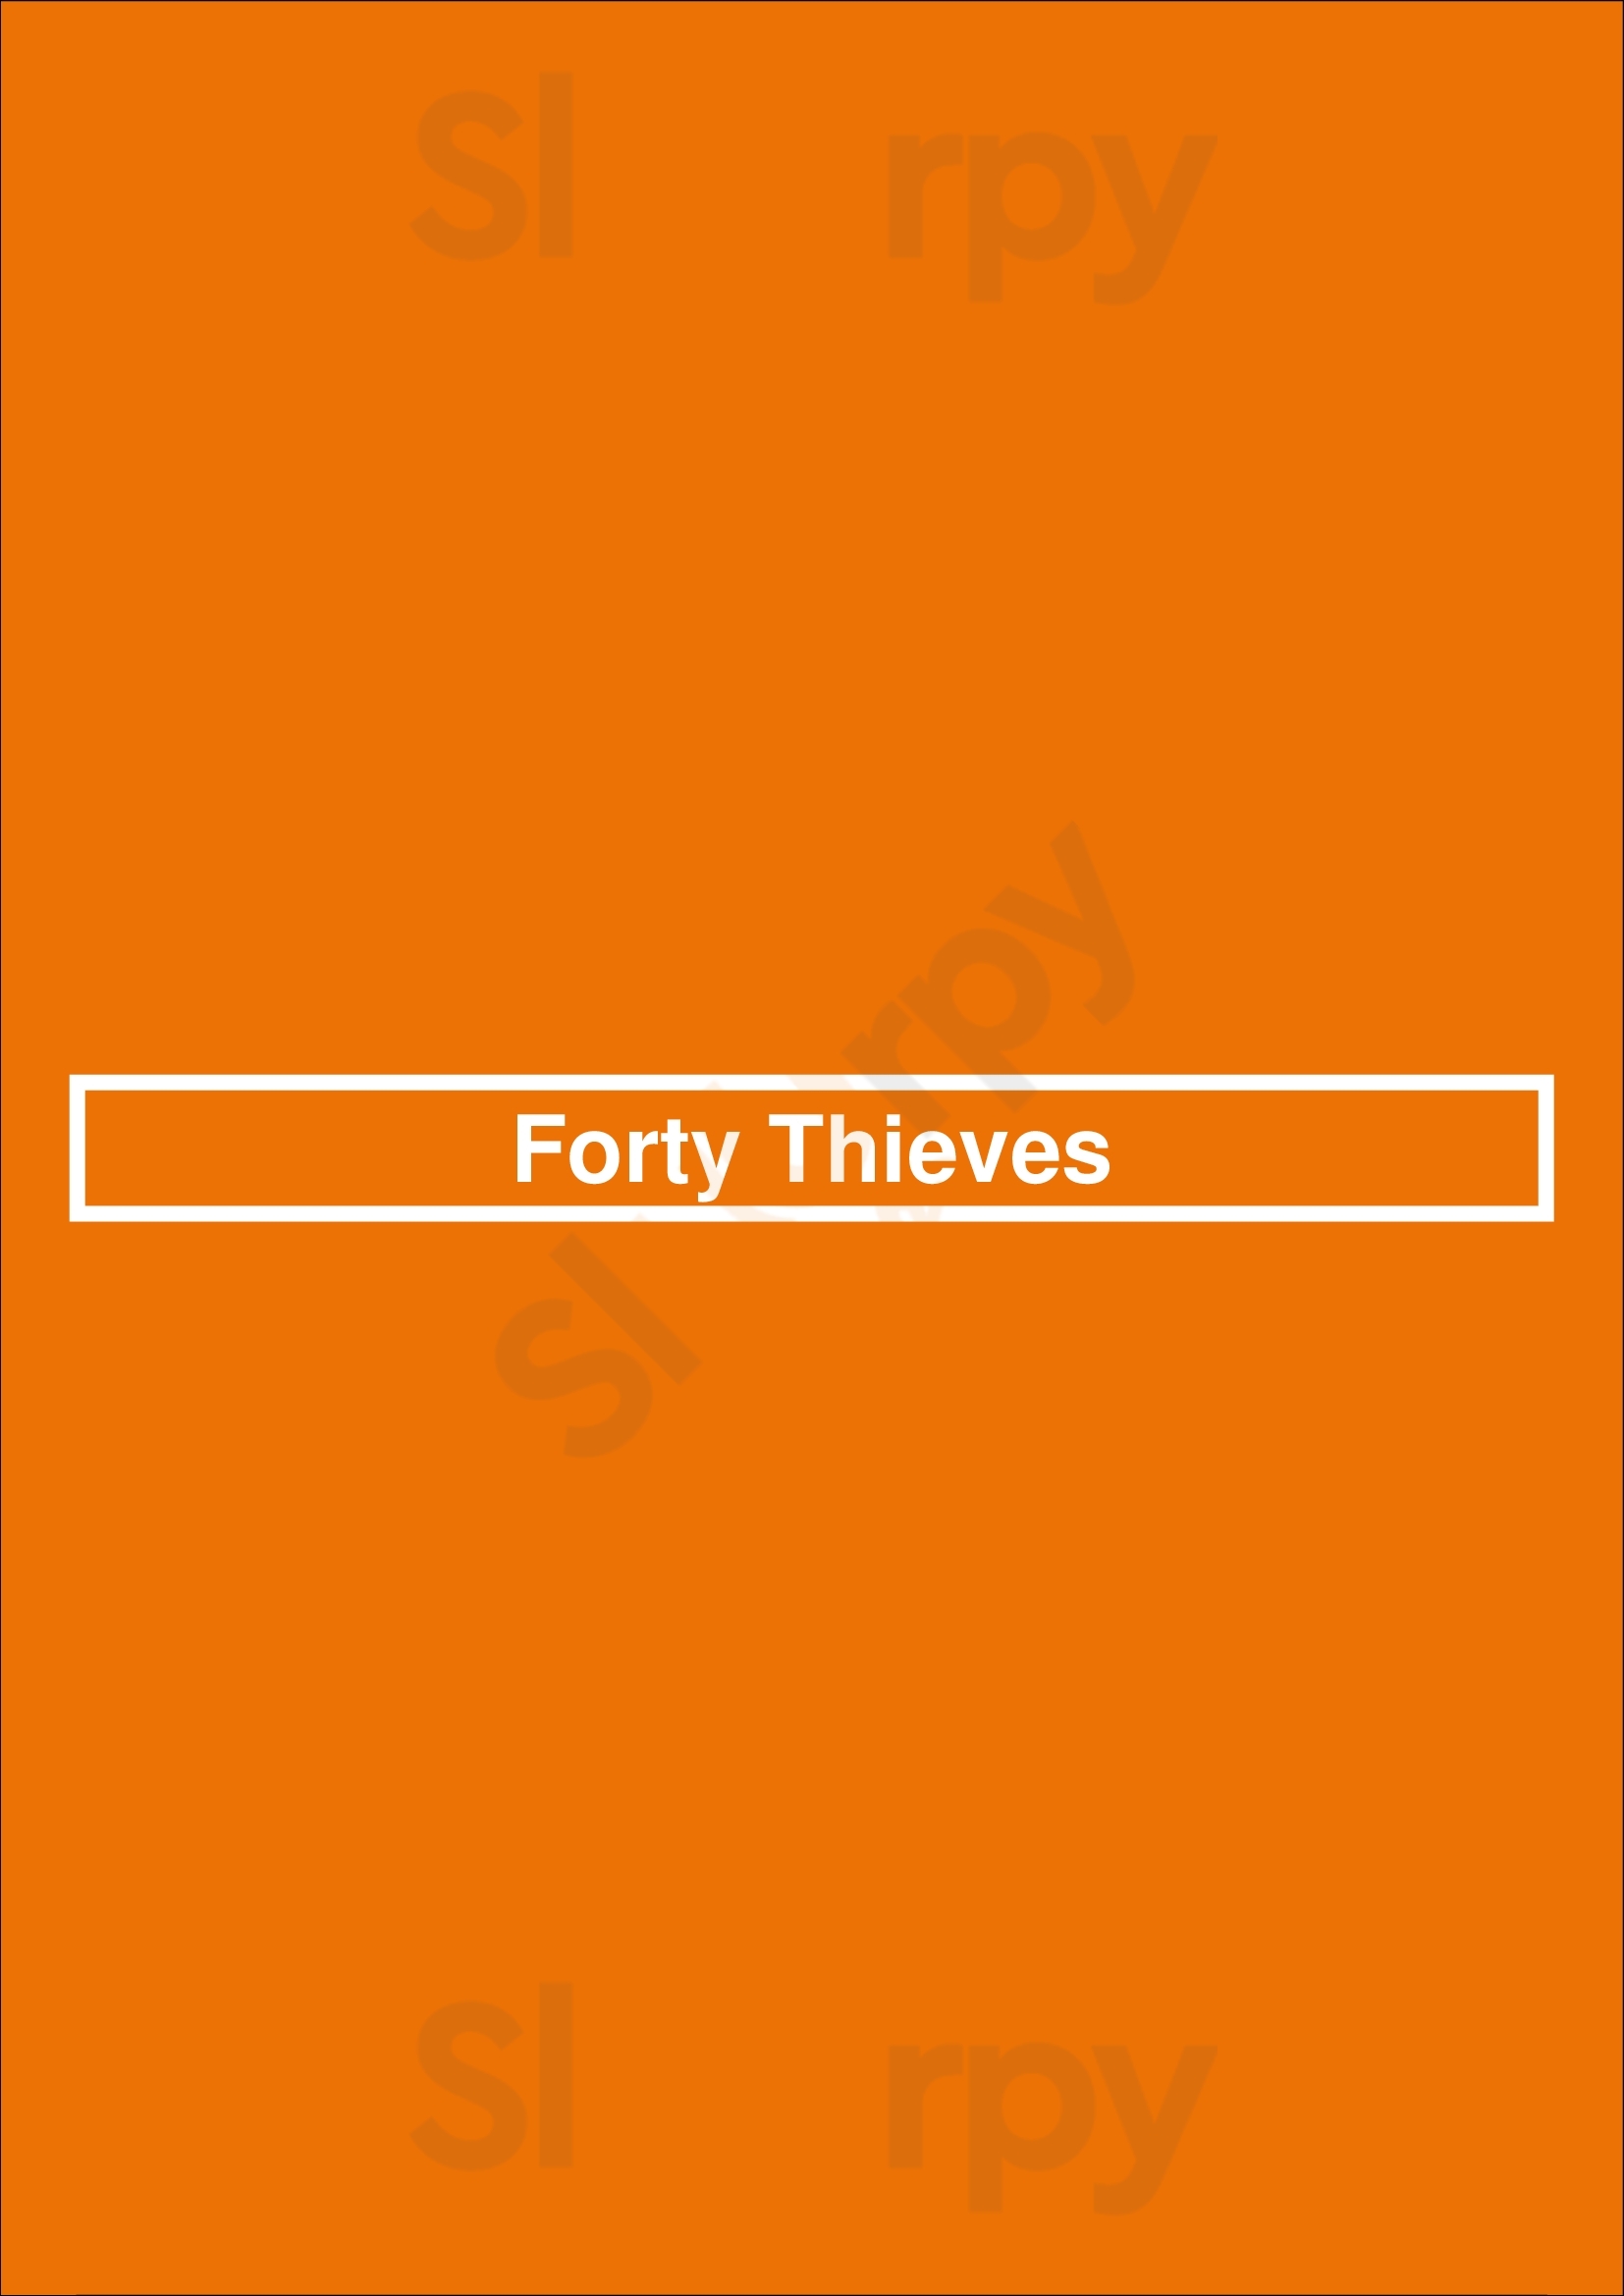 Forty Thieves Cincinnati Menu - 1